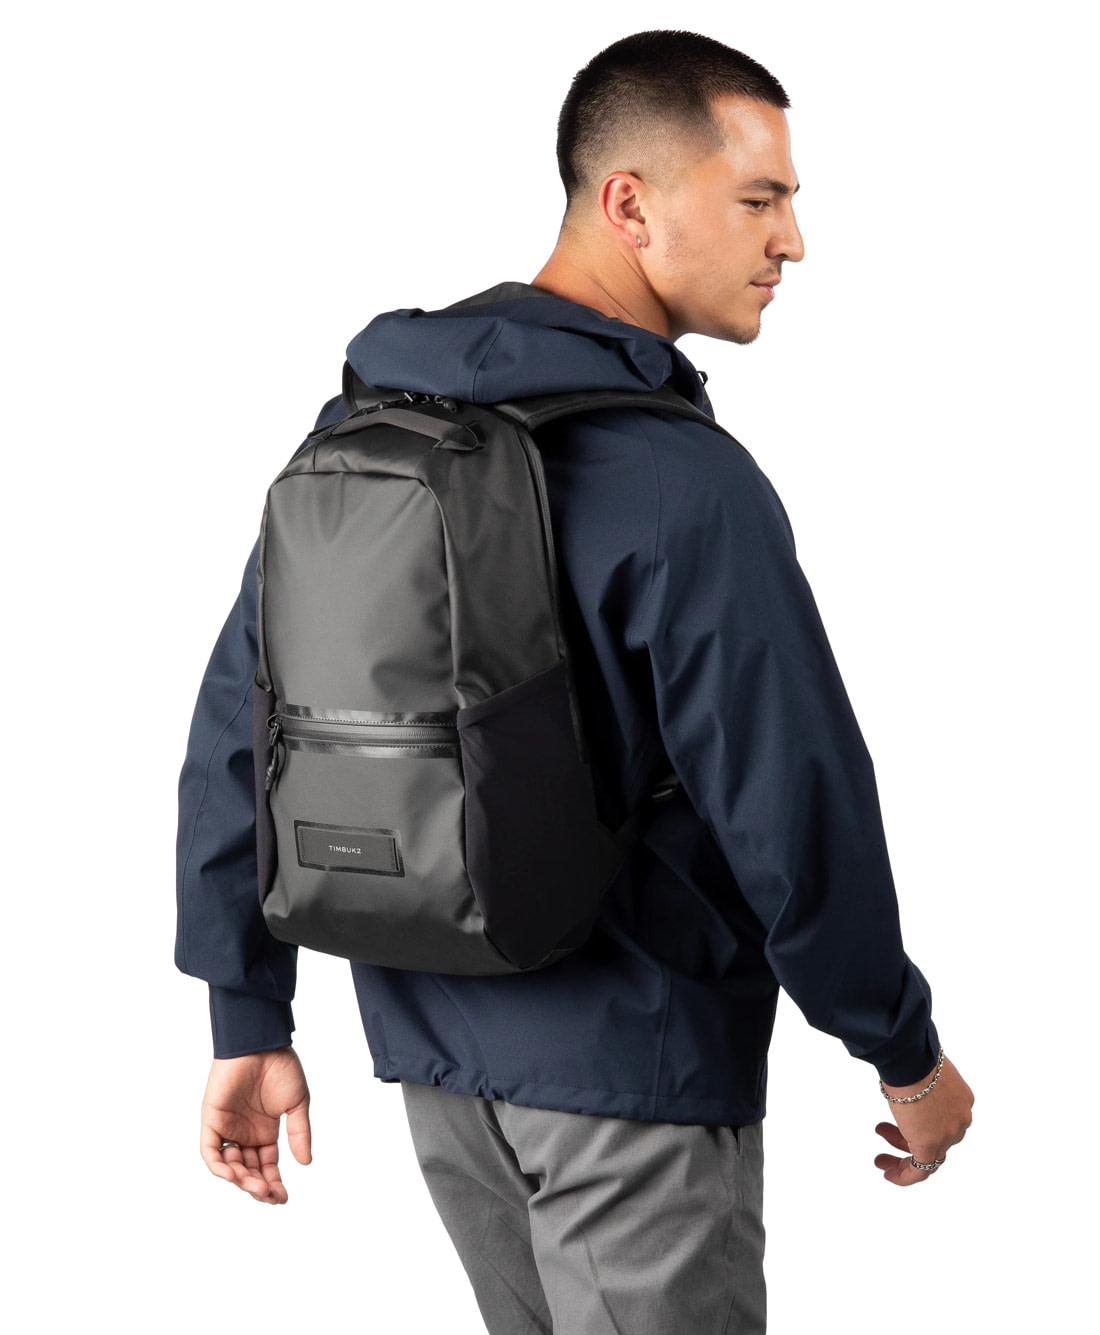 Lightweight Commuter Backpack